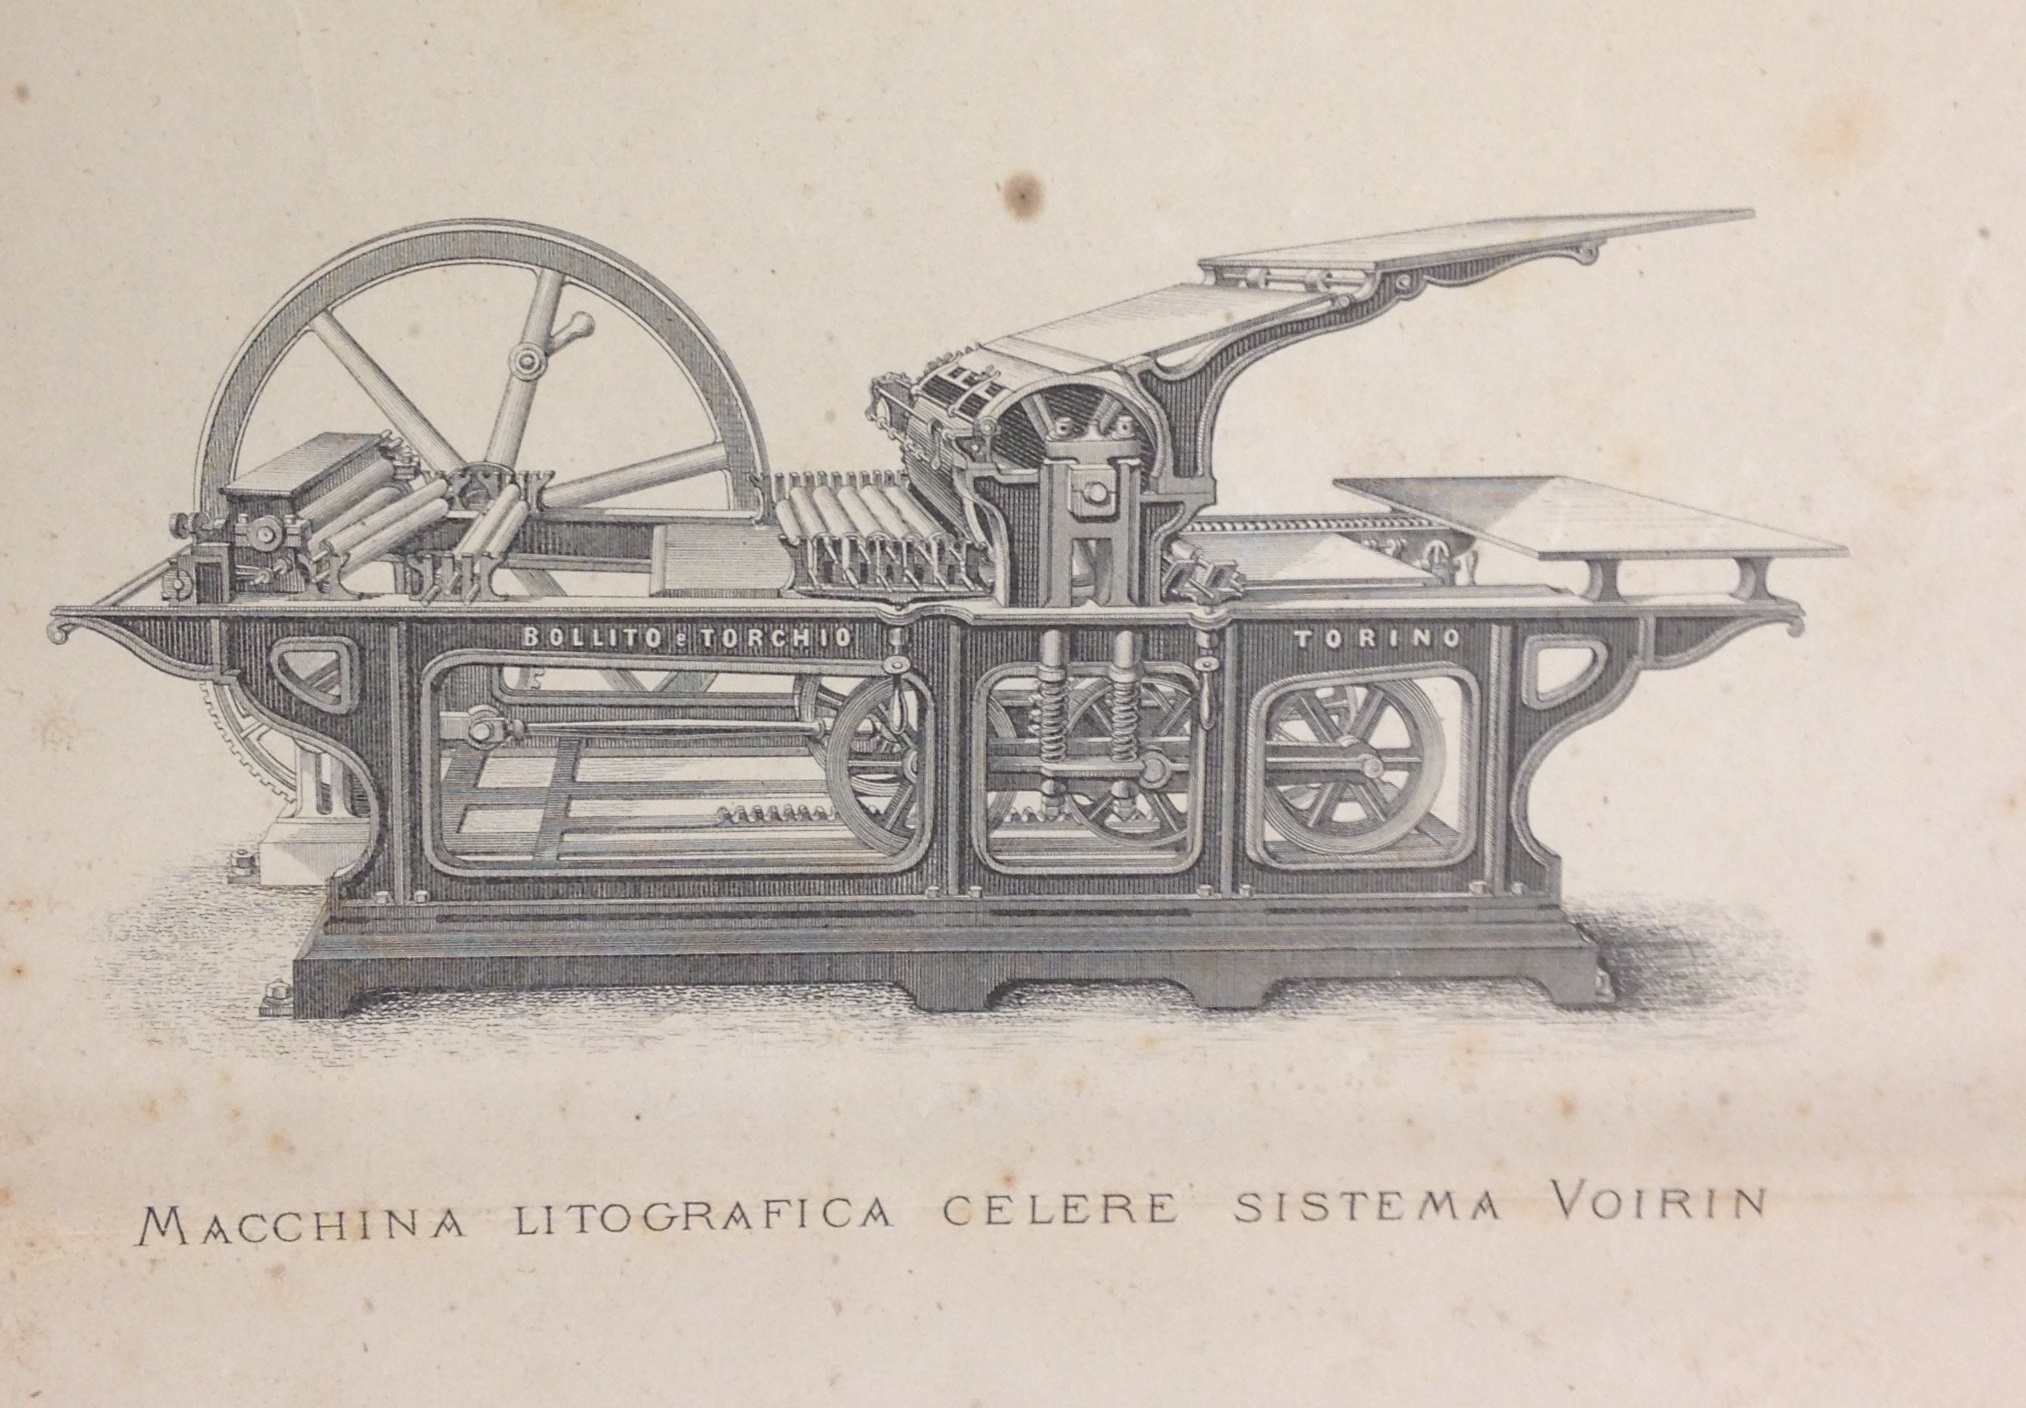 A steam-powered lithographic press illustrated in Camillo, Doyen, Trattato di litografia: storico, teorico, pratico ed economico (Turin, 1877)  (NE2425 .D68 1877)